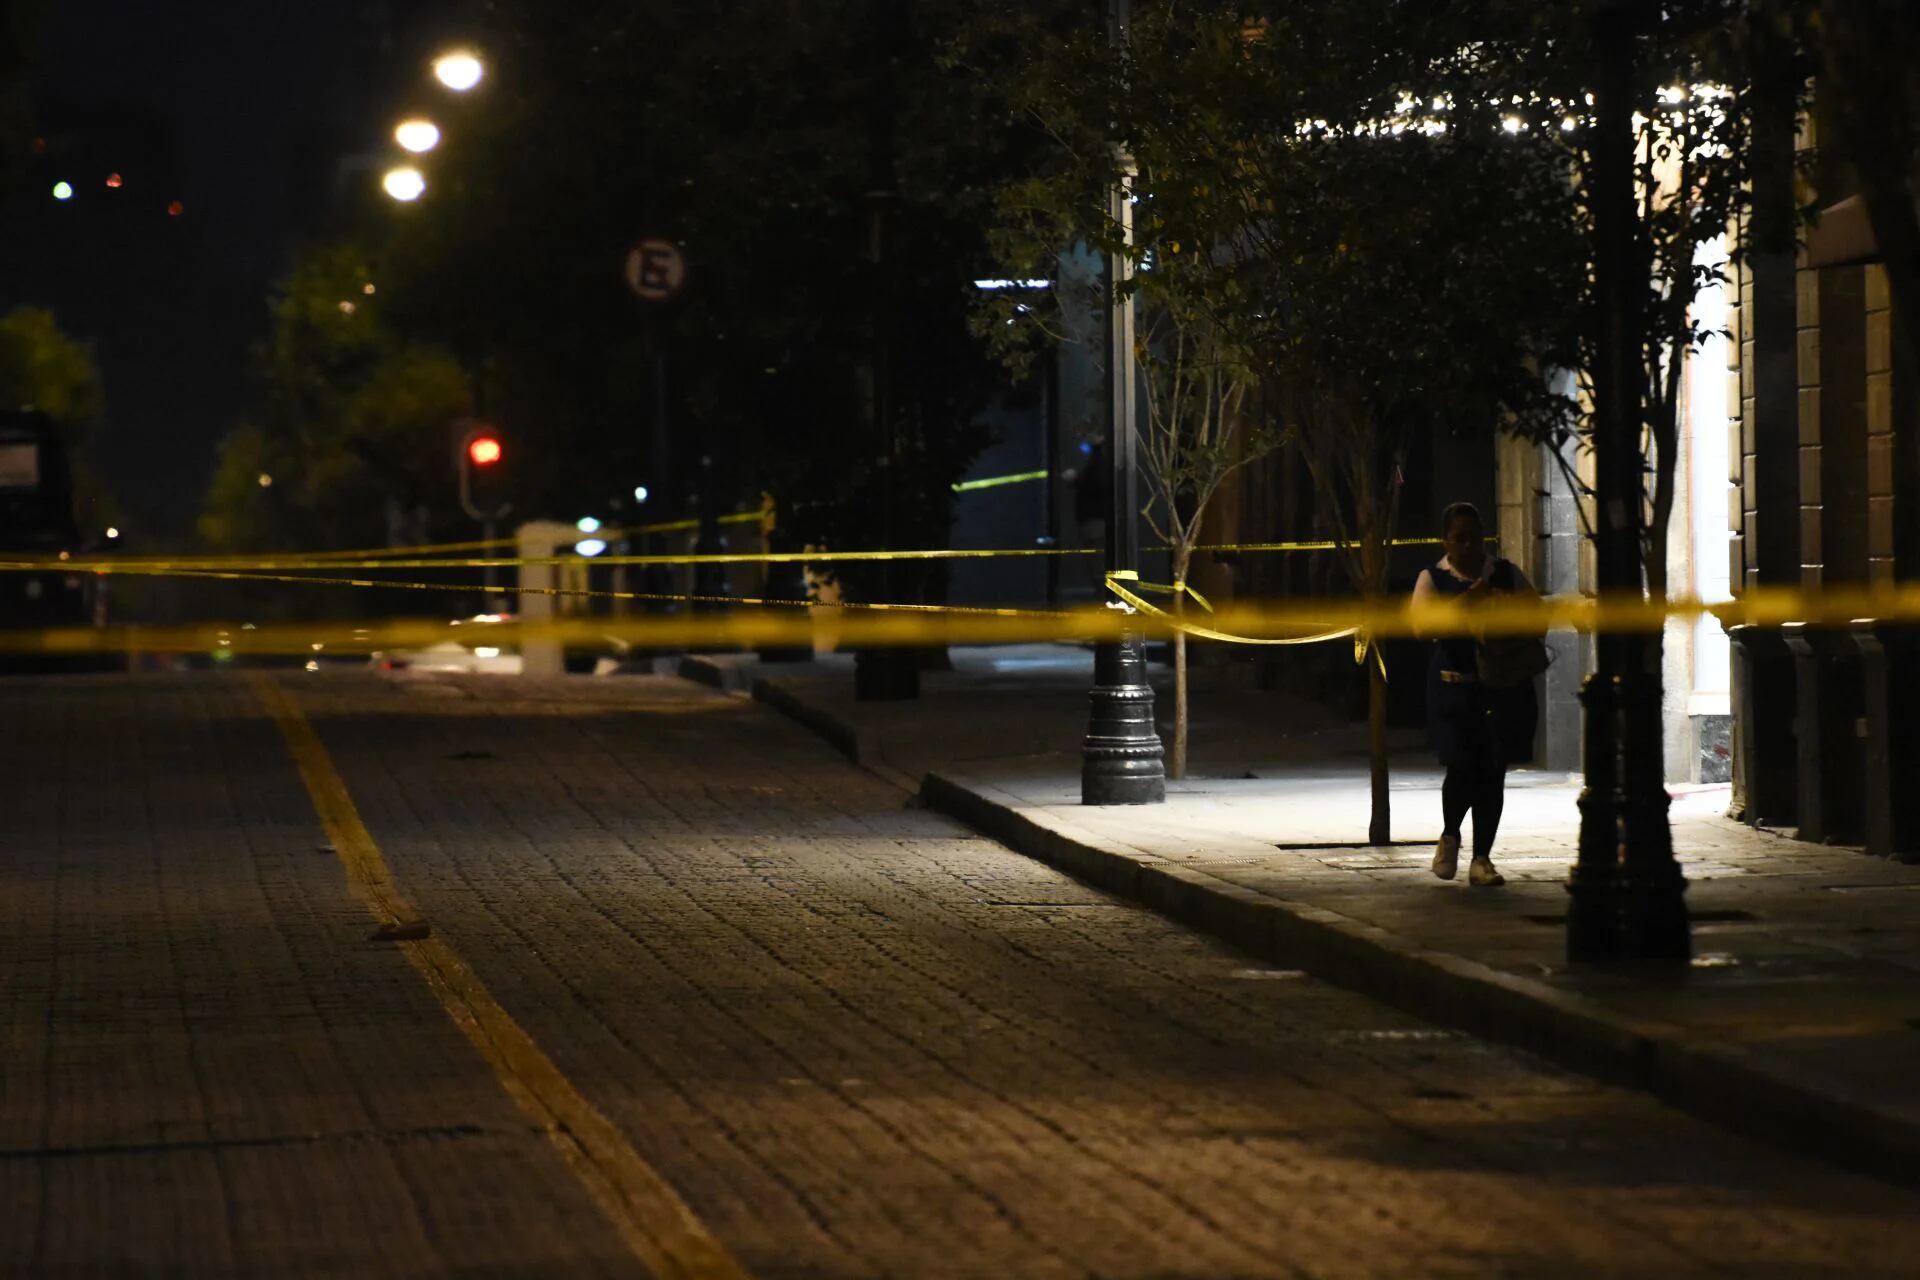 Balacera deja 4 personas muertas en anexo de Celaya, Guanajuato